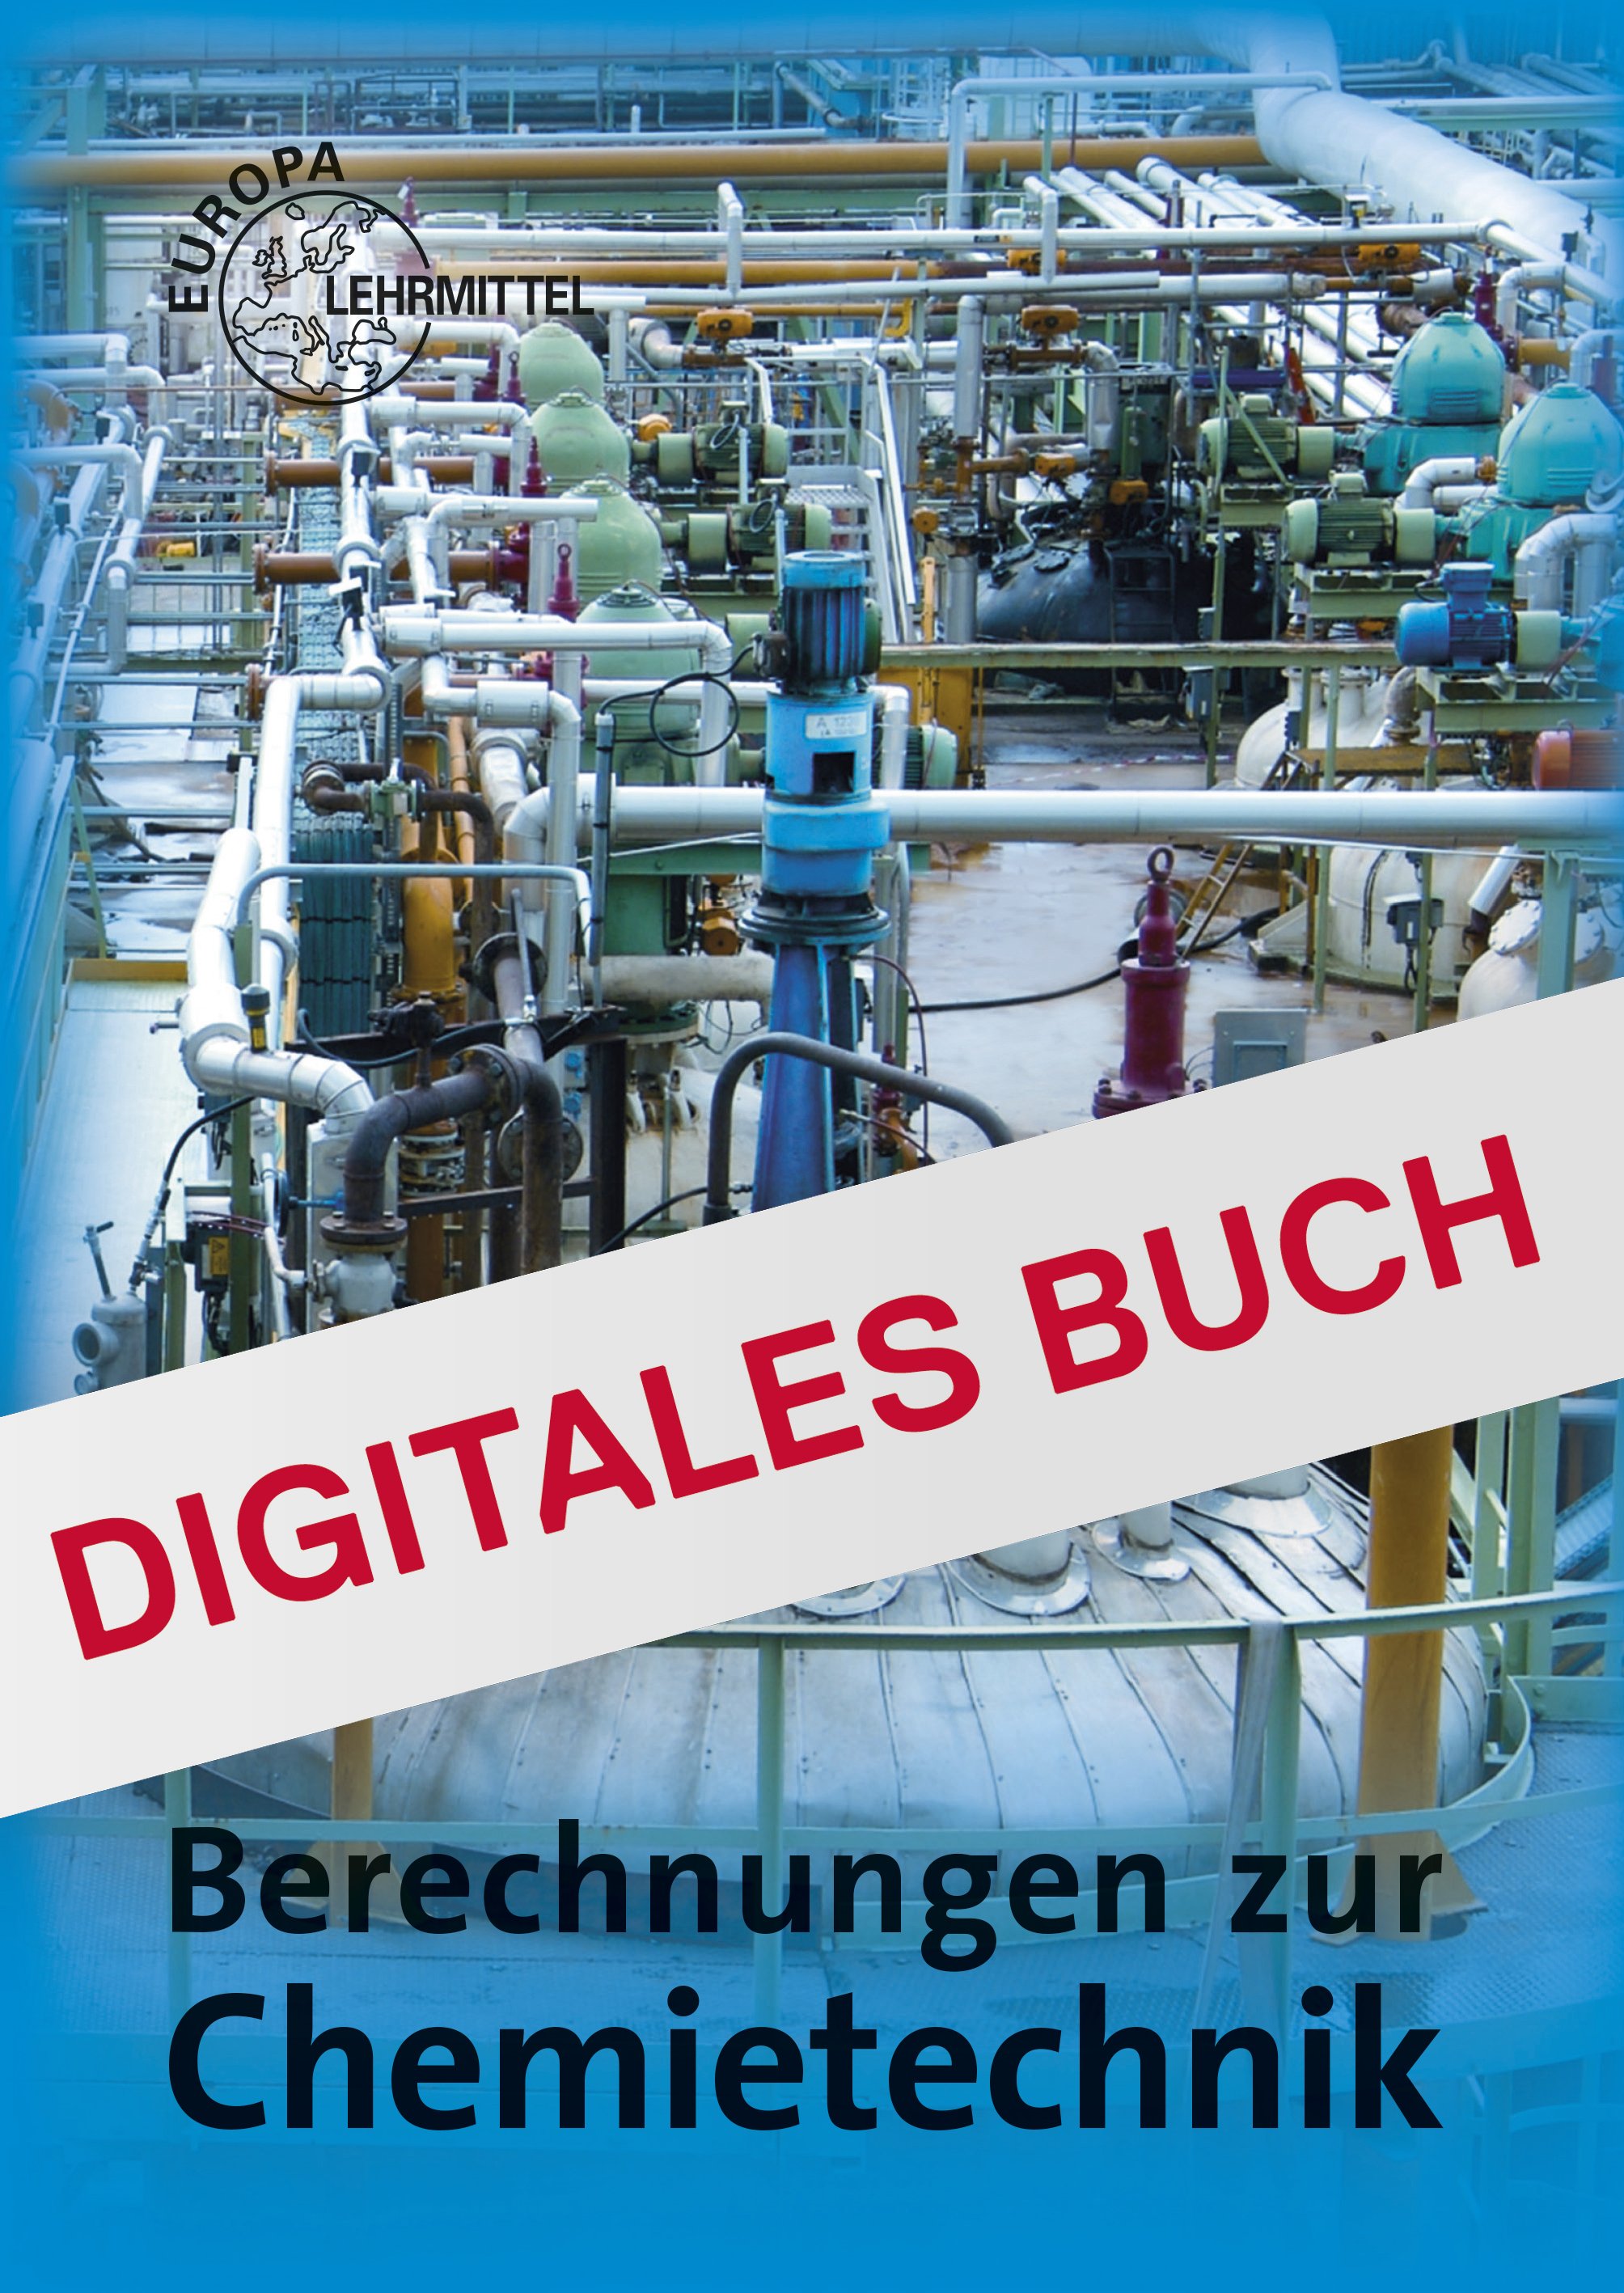 Berechnungen zur Chemietechnik - Digitales Buch